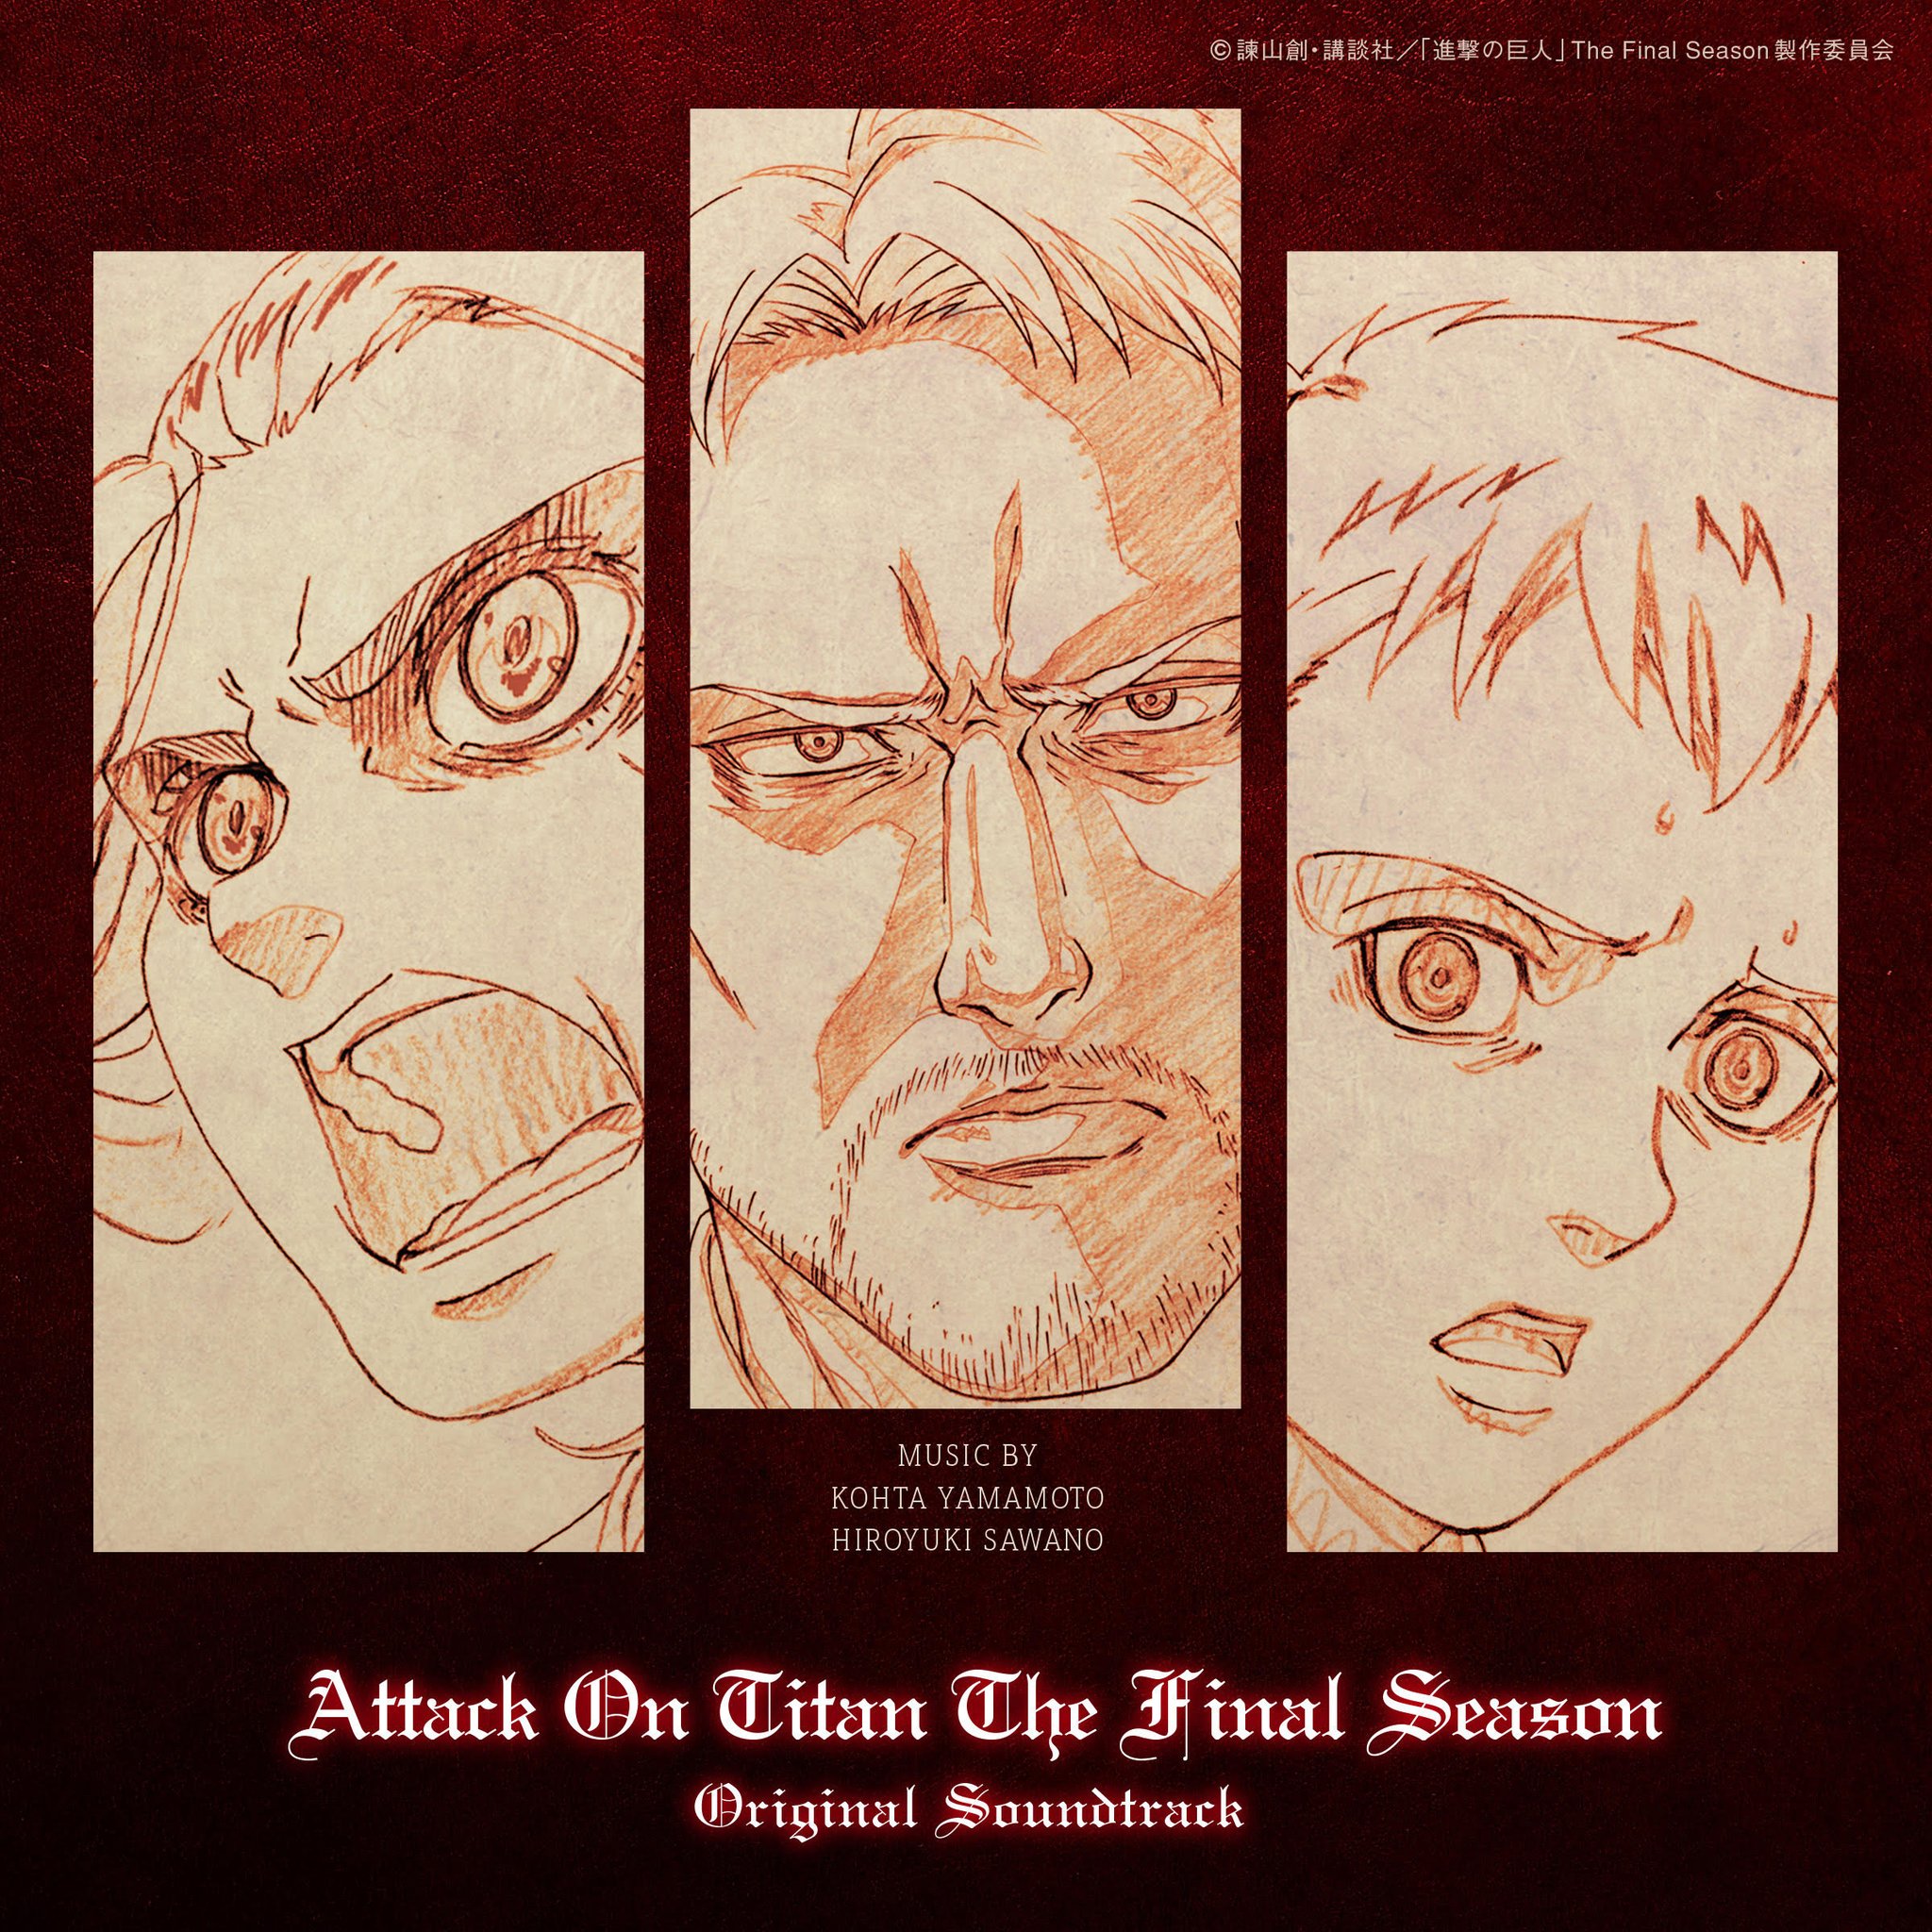 Attack on Titan the final season soundtrack